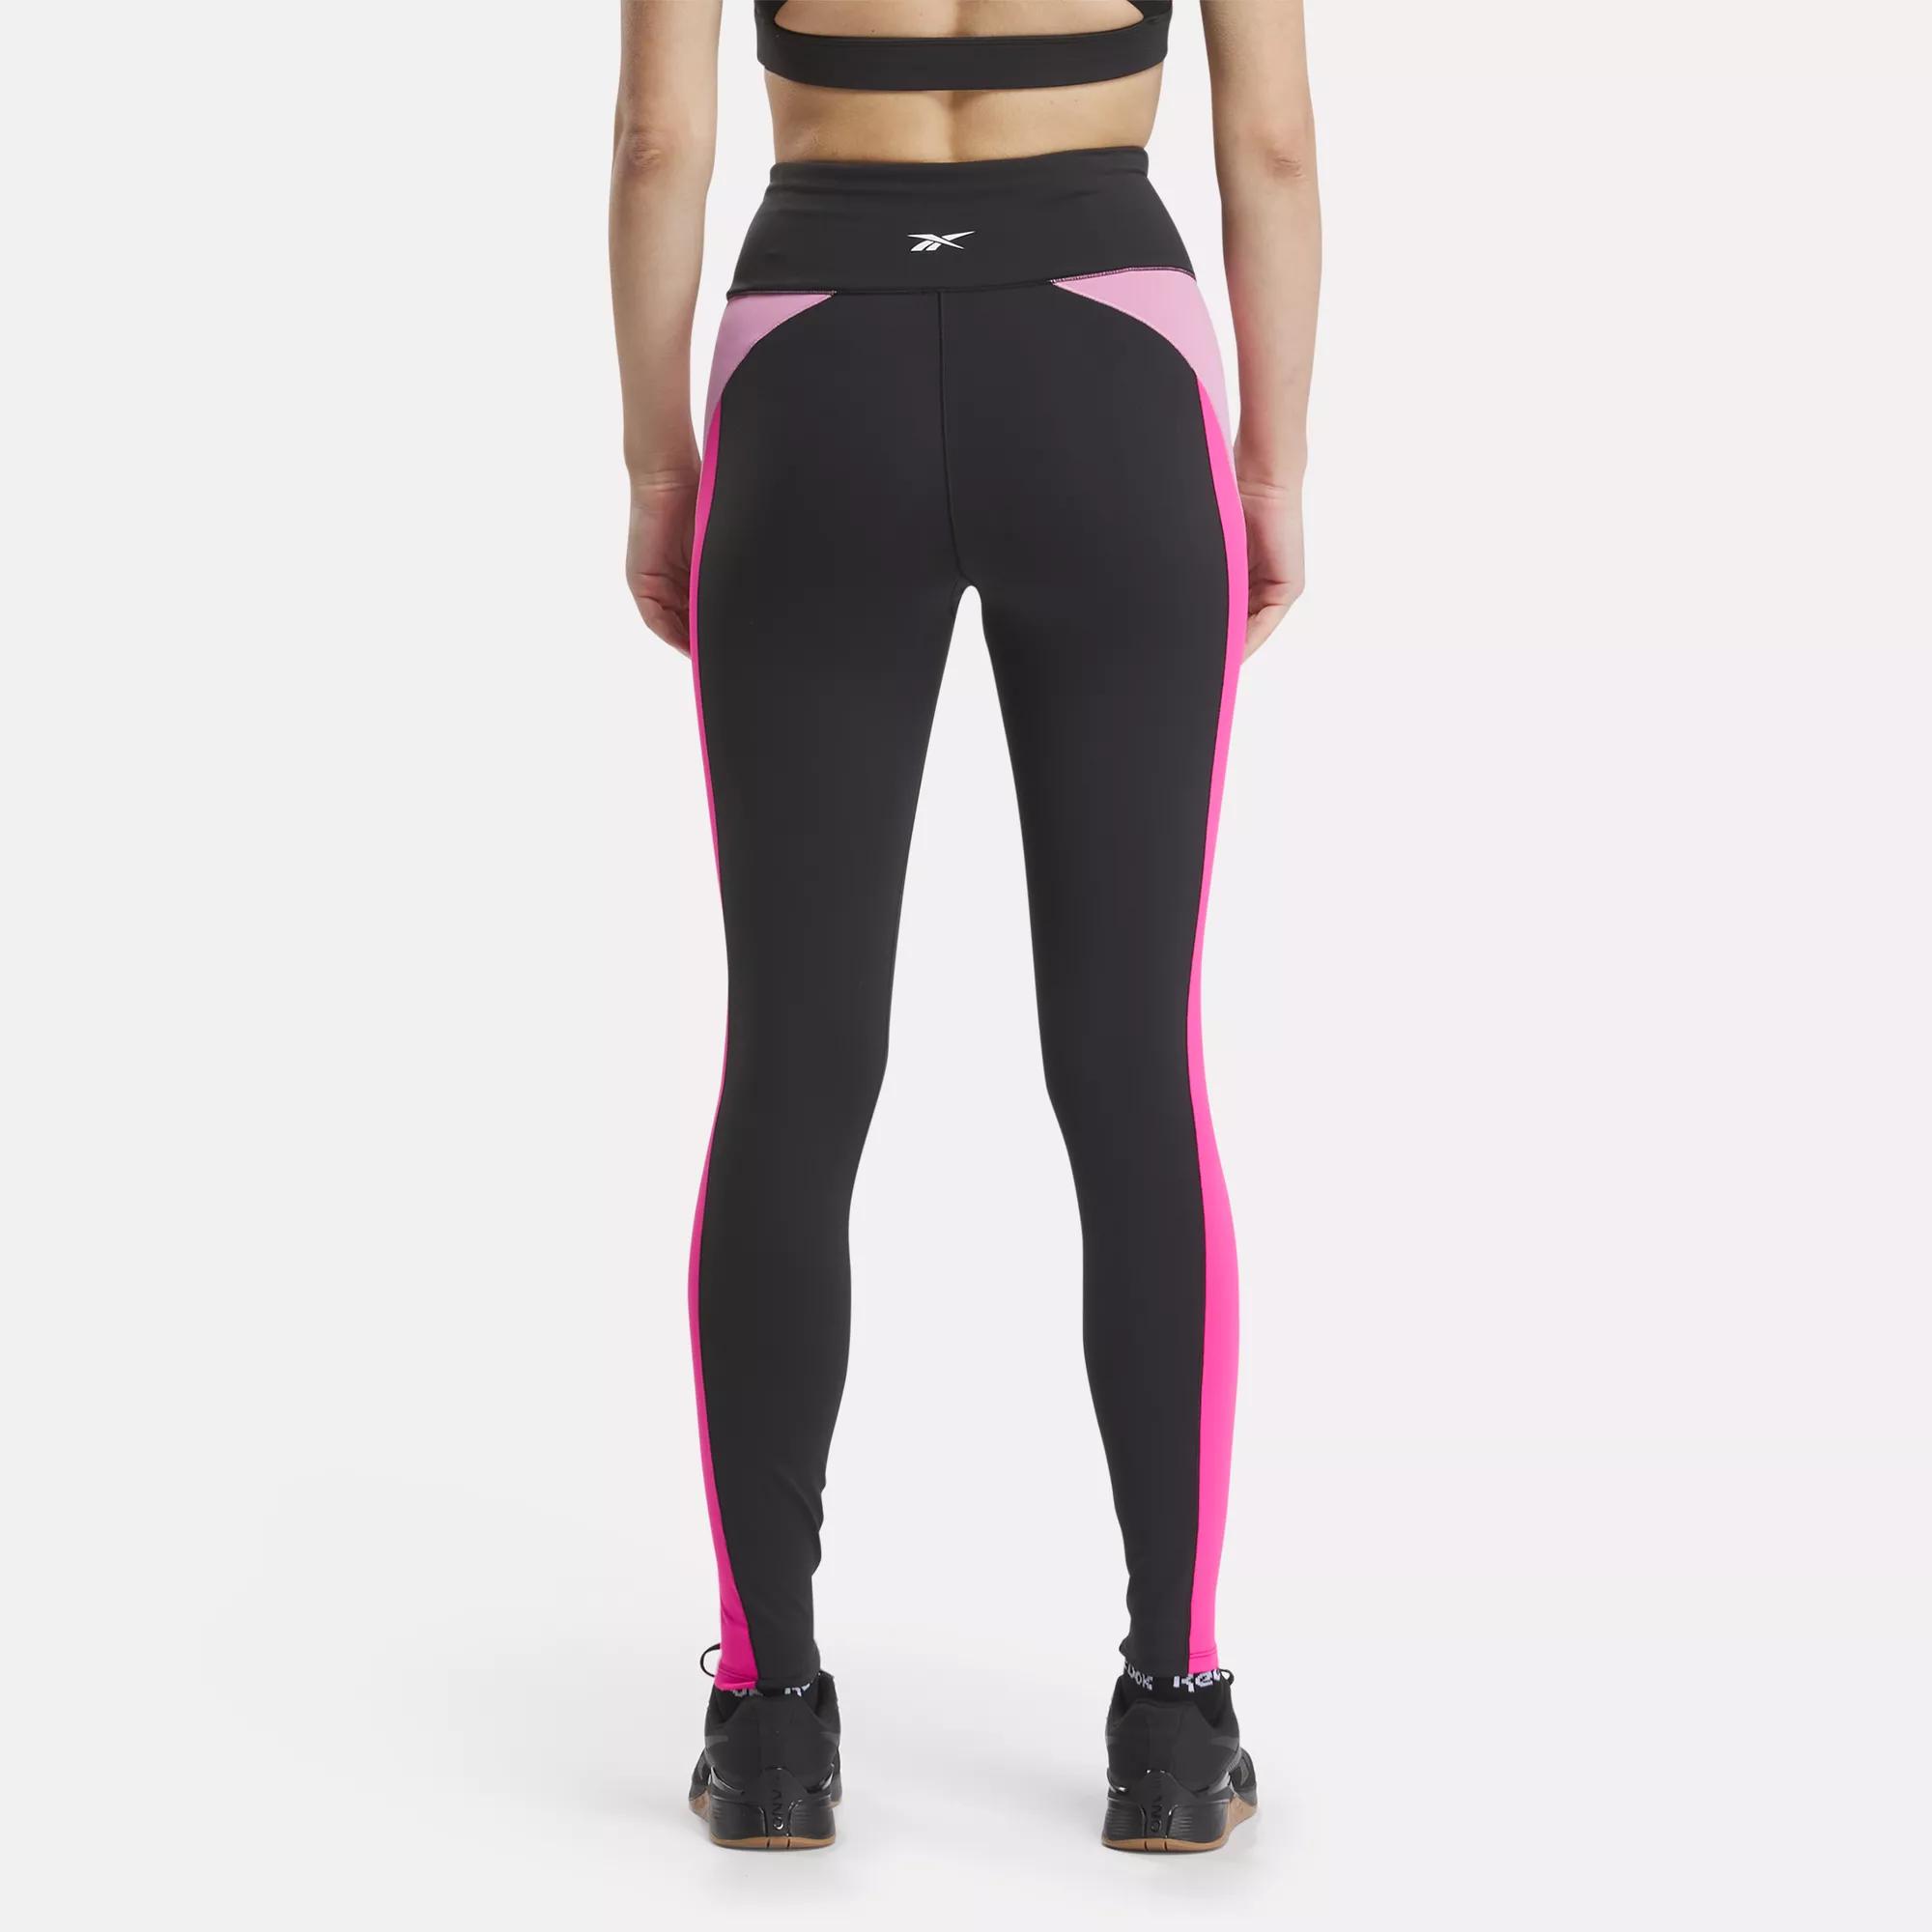 Women's leggings PLR054 - black/pink